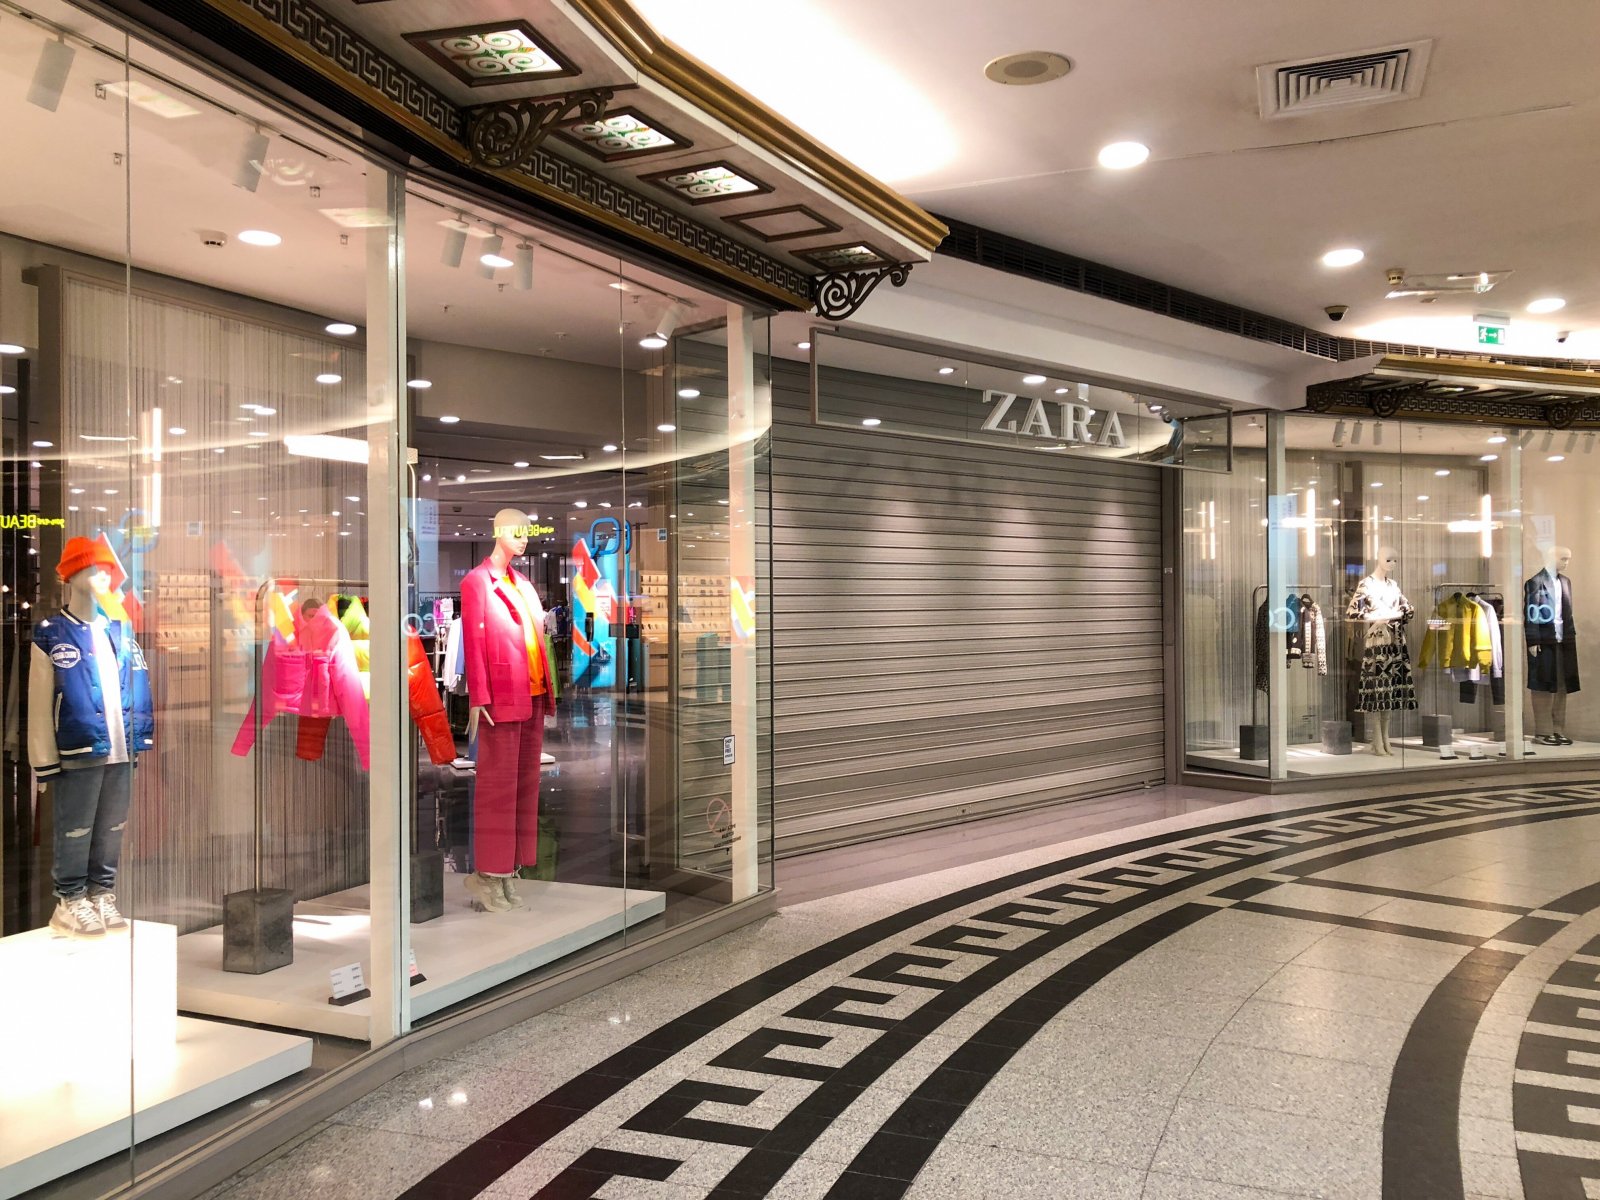 Покупатели недовольны новыми правилами торговой сети Zara